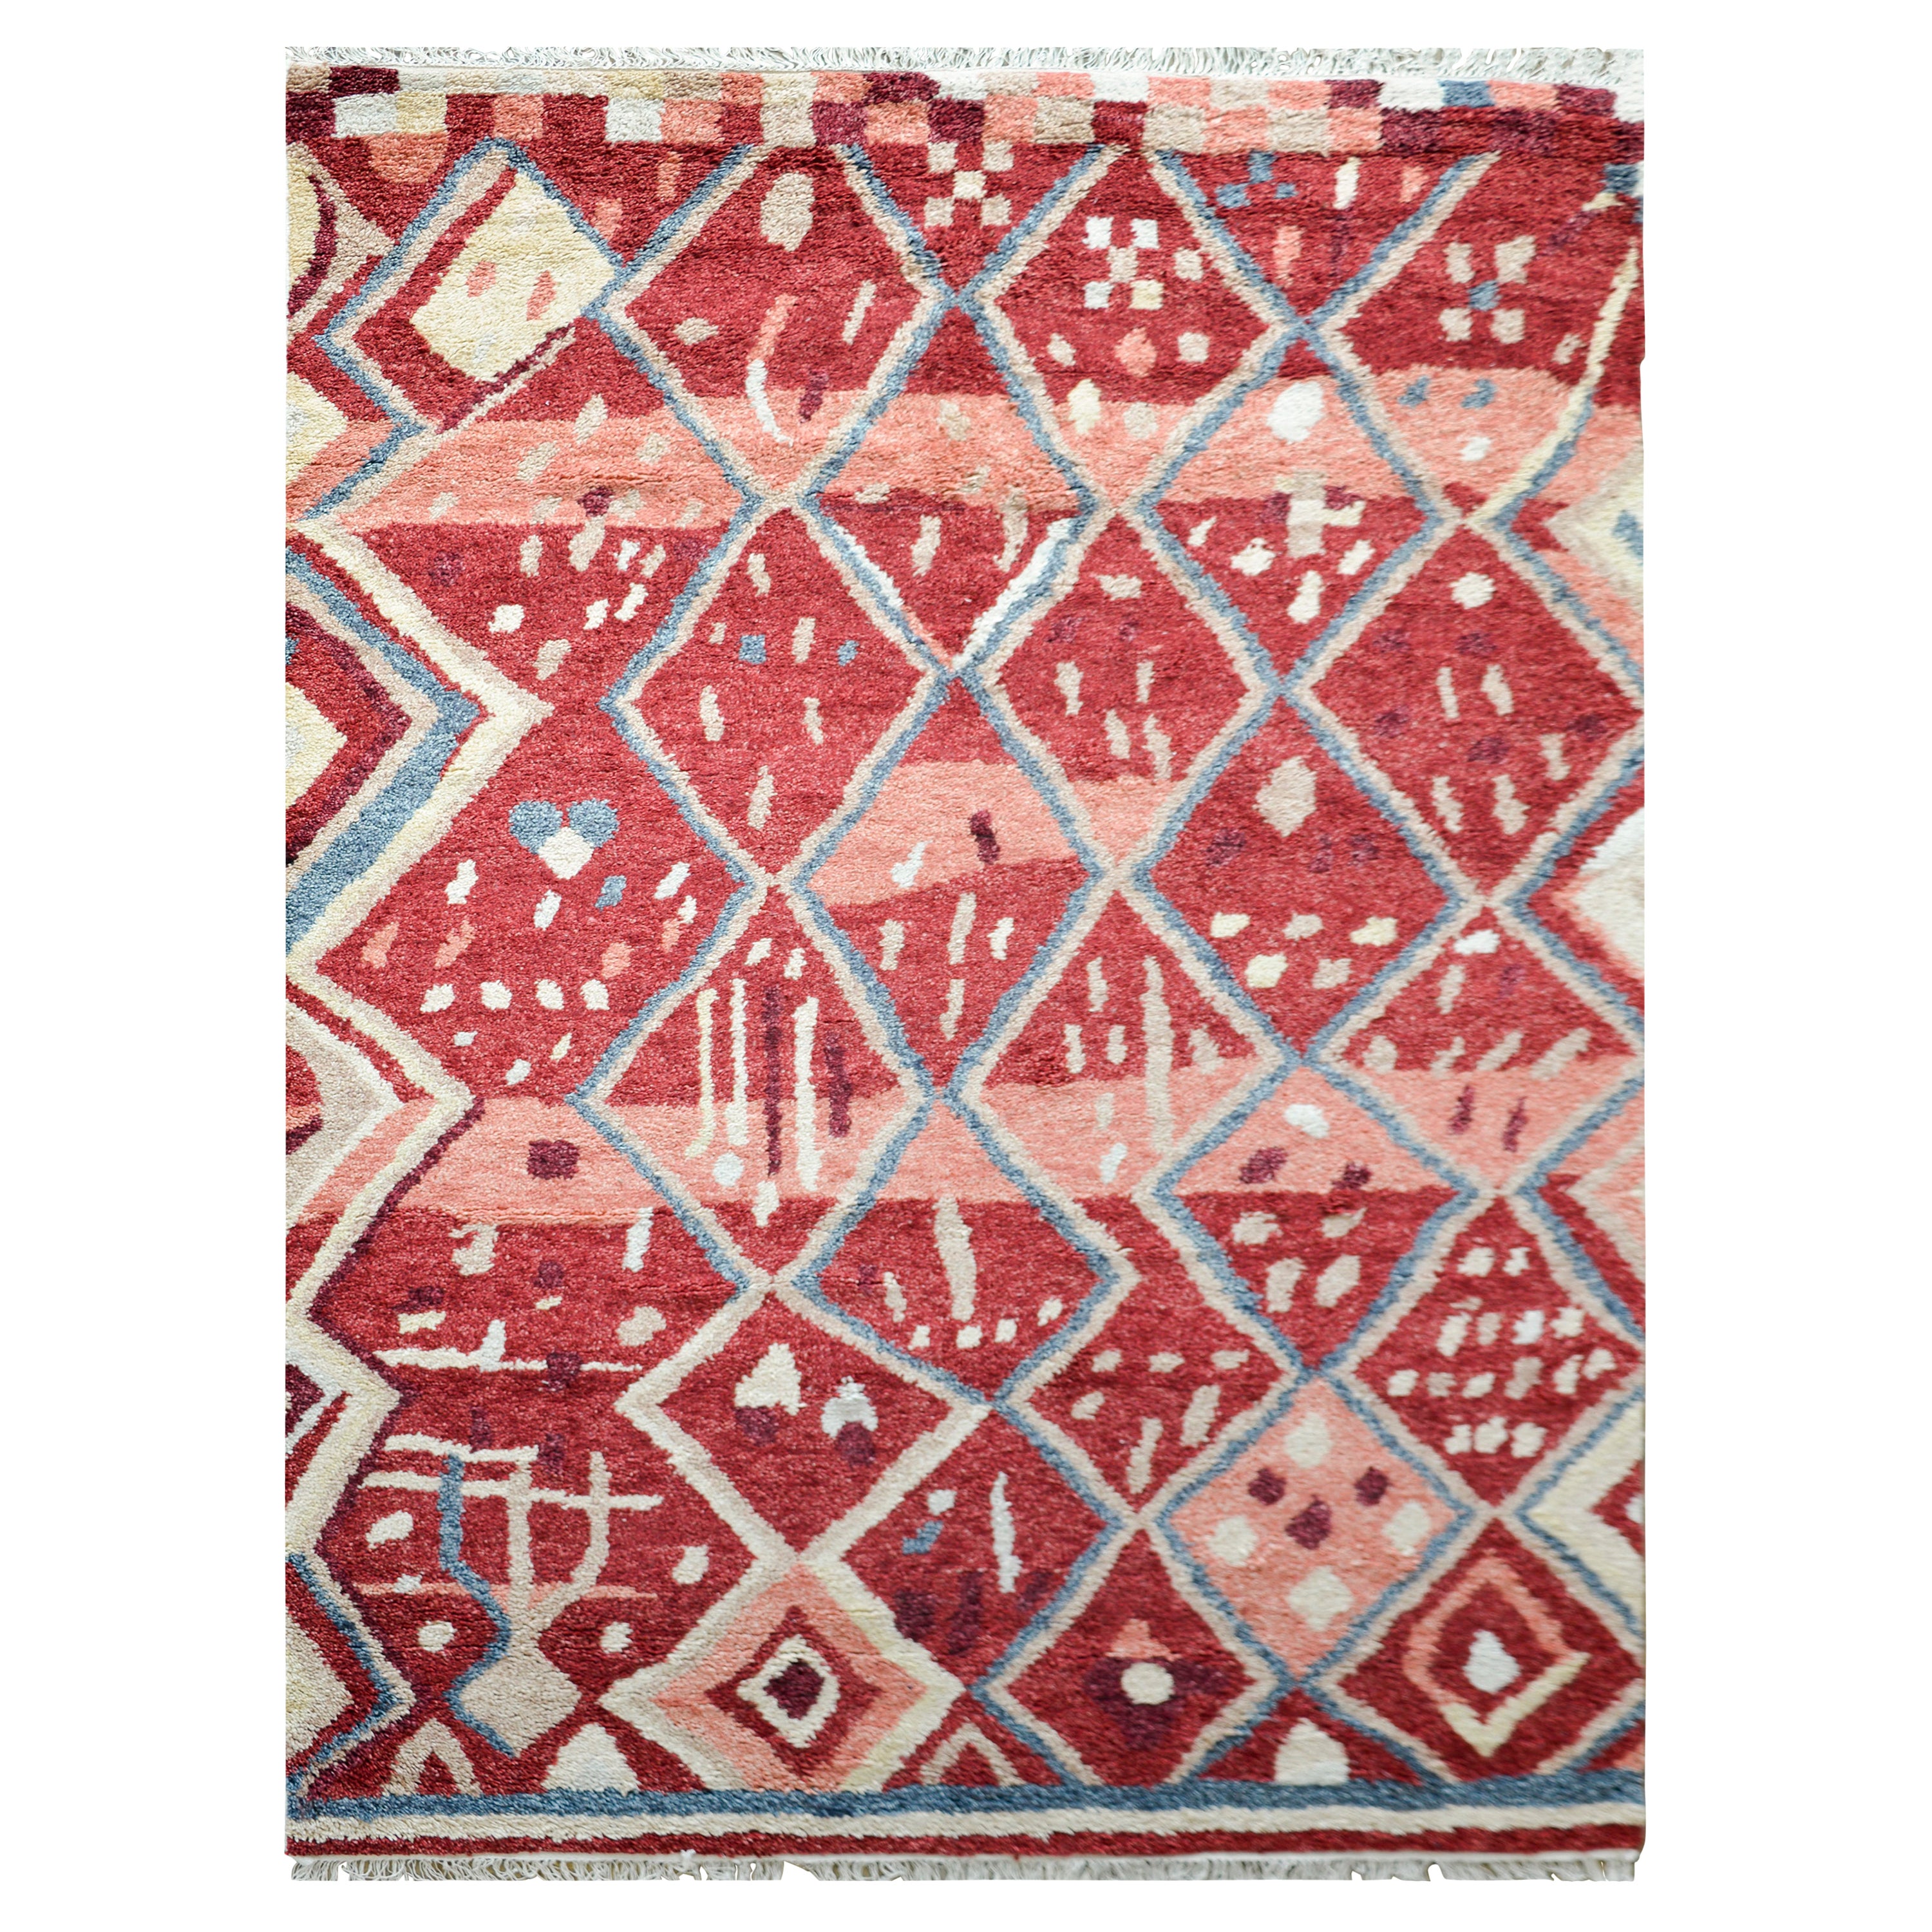 Marokkanischer Teppich